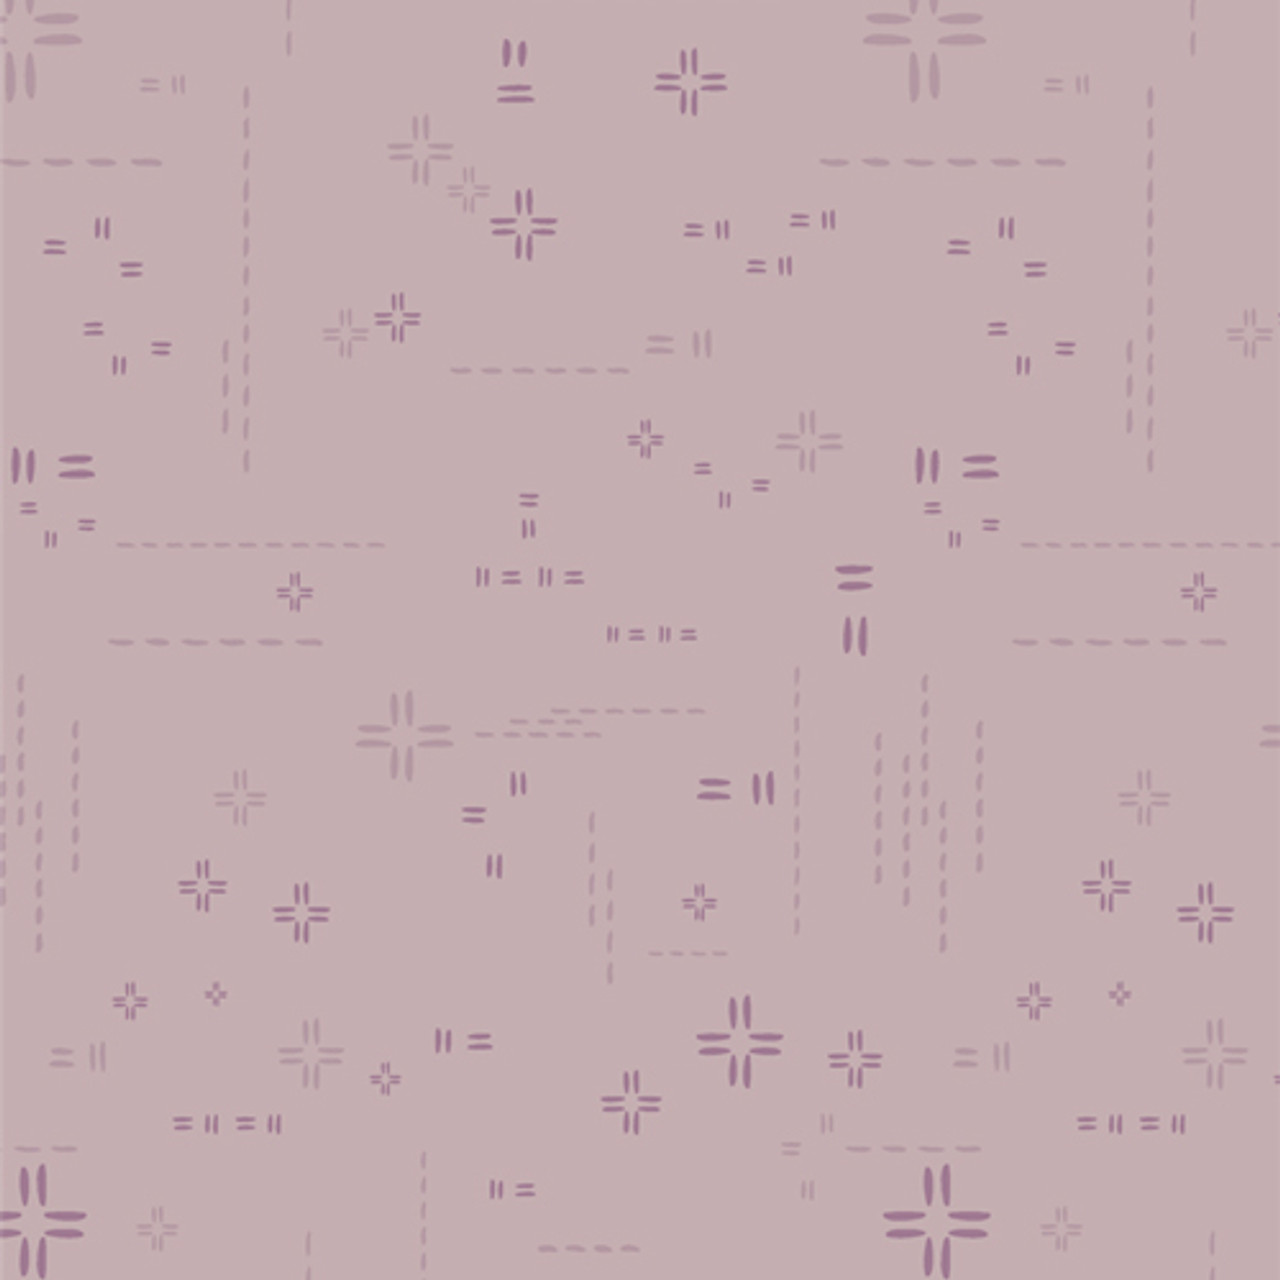 AGF Fabric Decostitch Lilac Dust